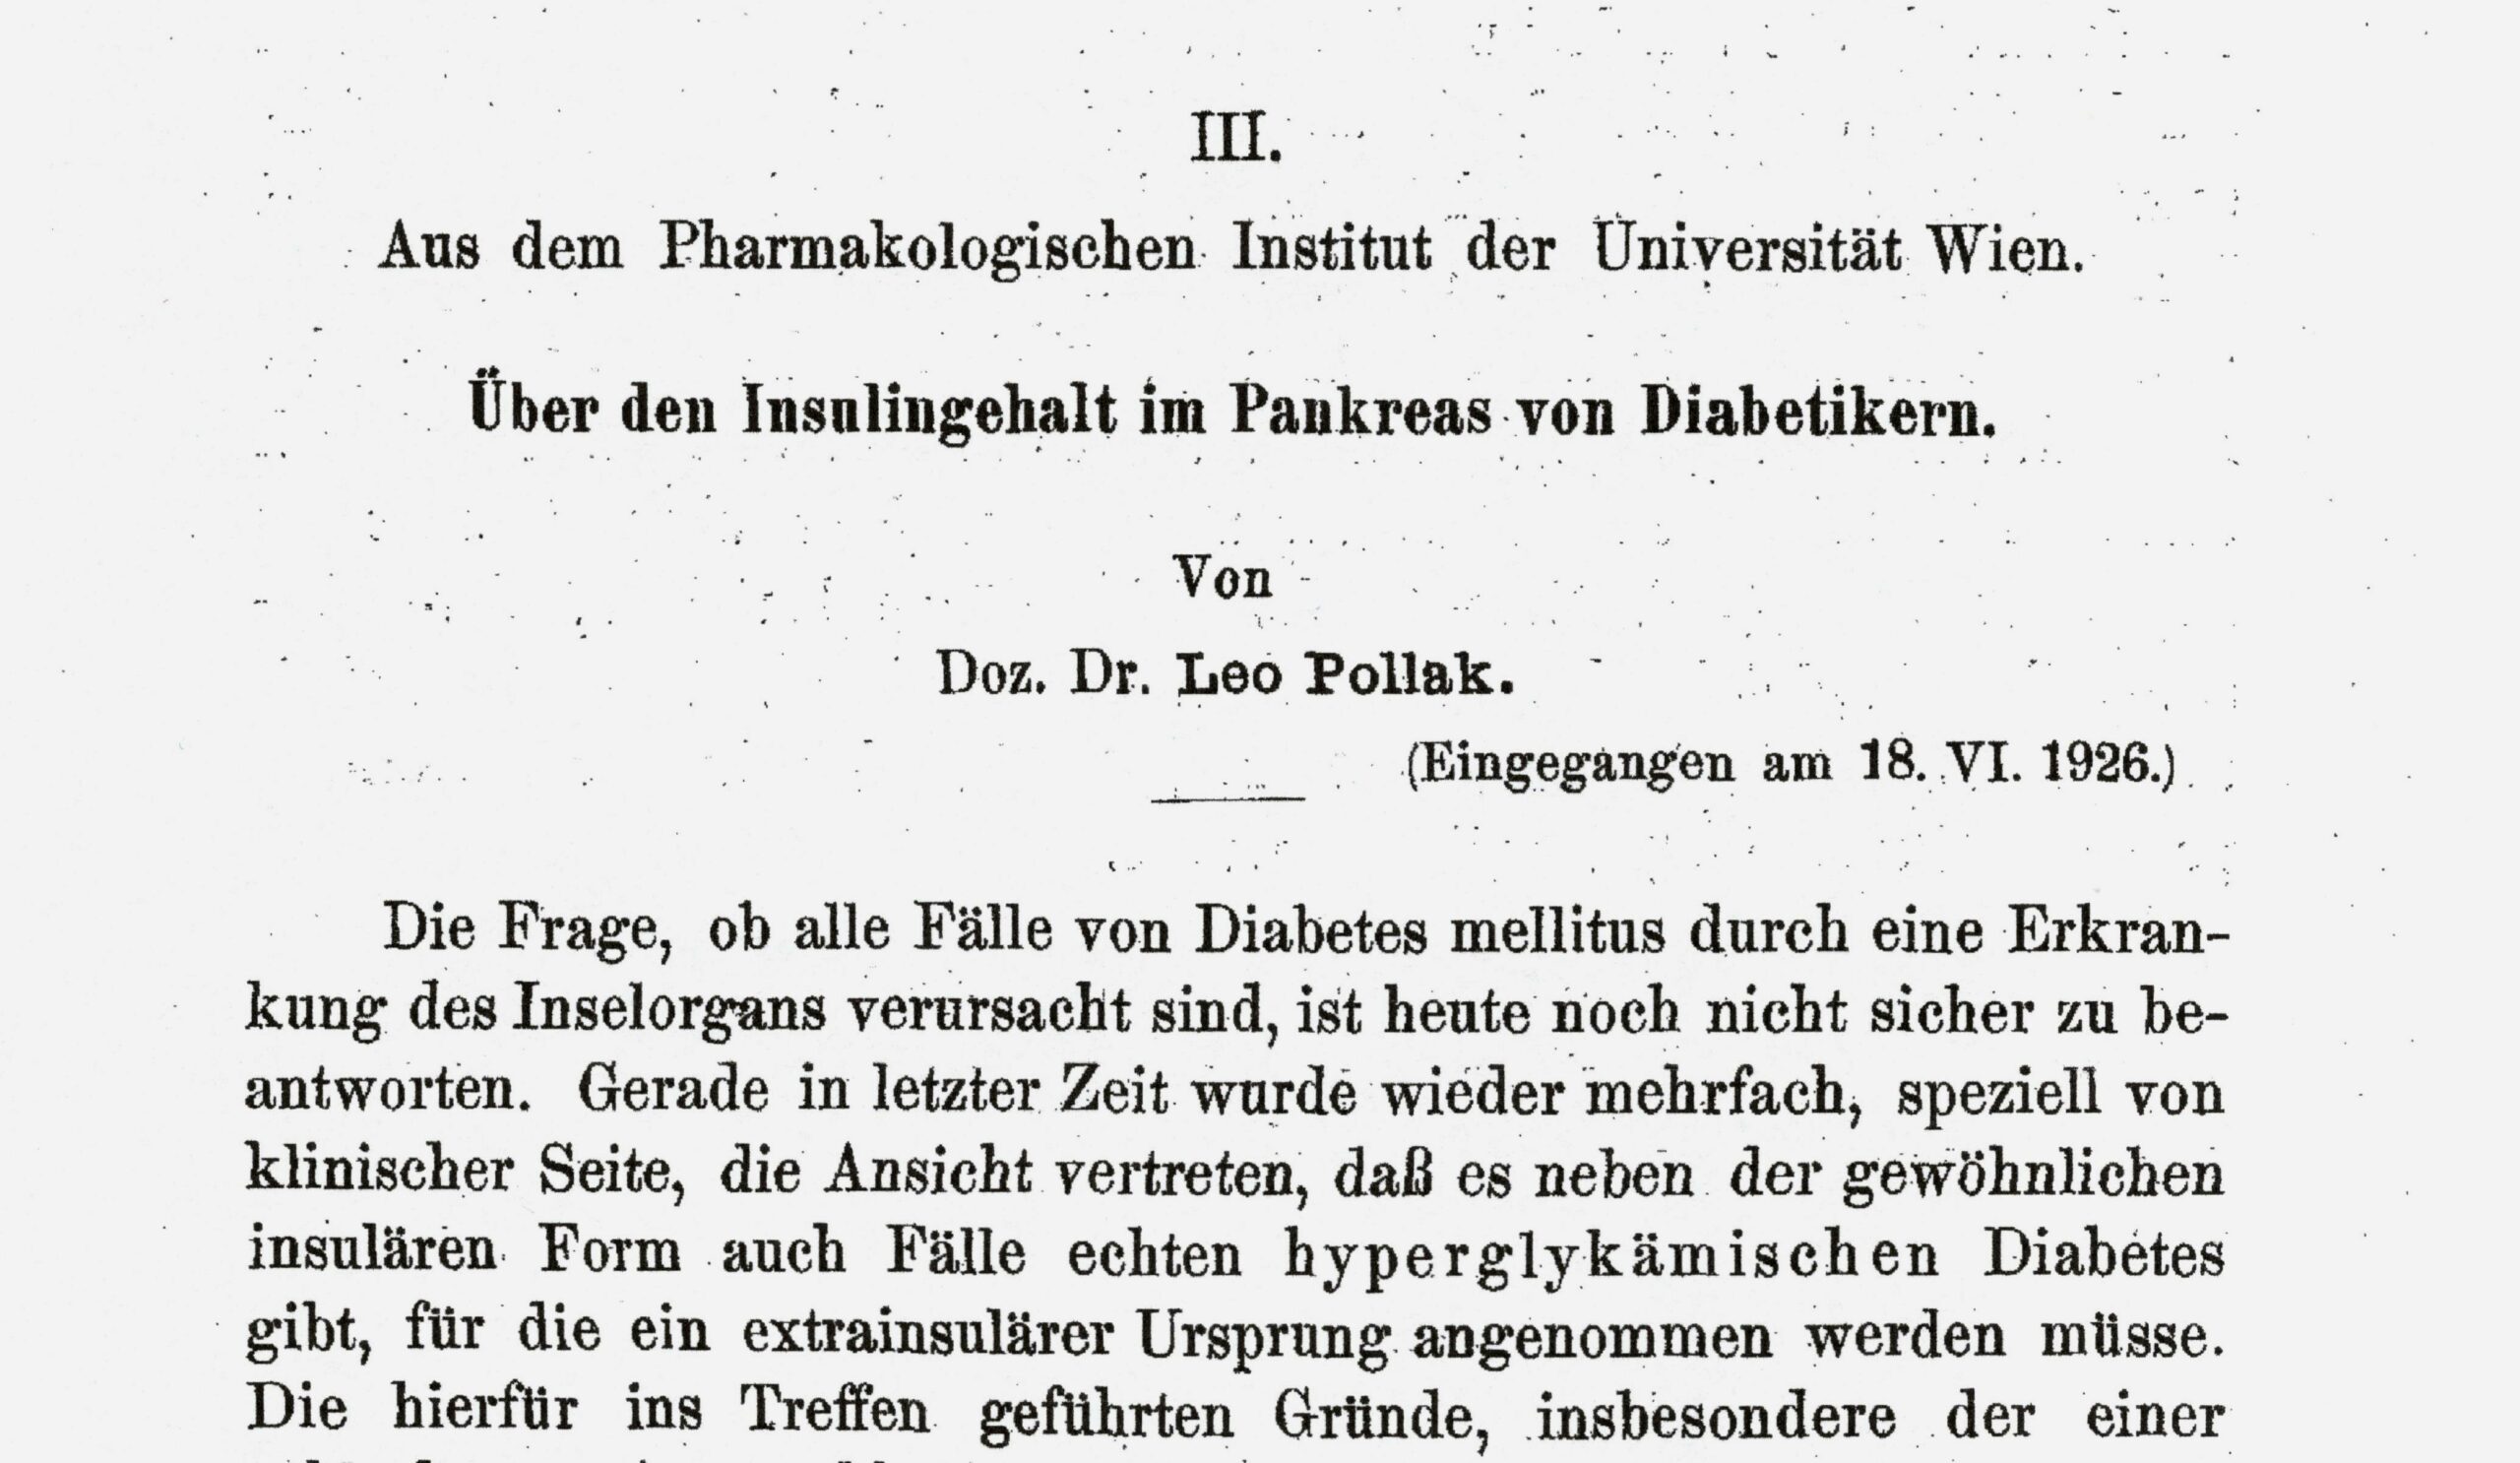 Naunyn-Schmiedebergs Archiv für experimentelle Pathologie und Pharmakologie 1926